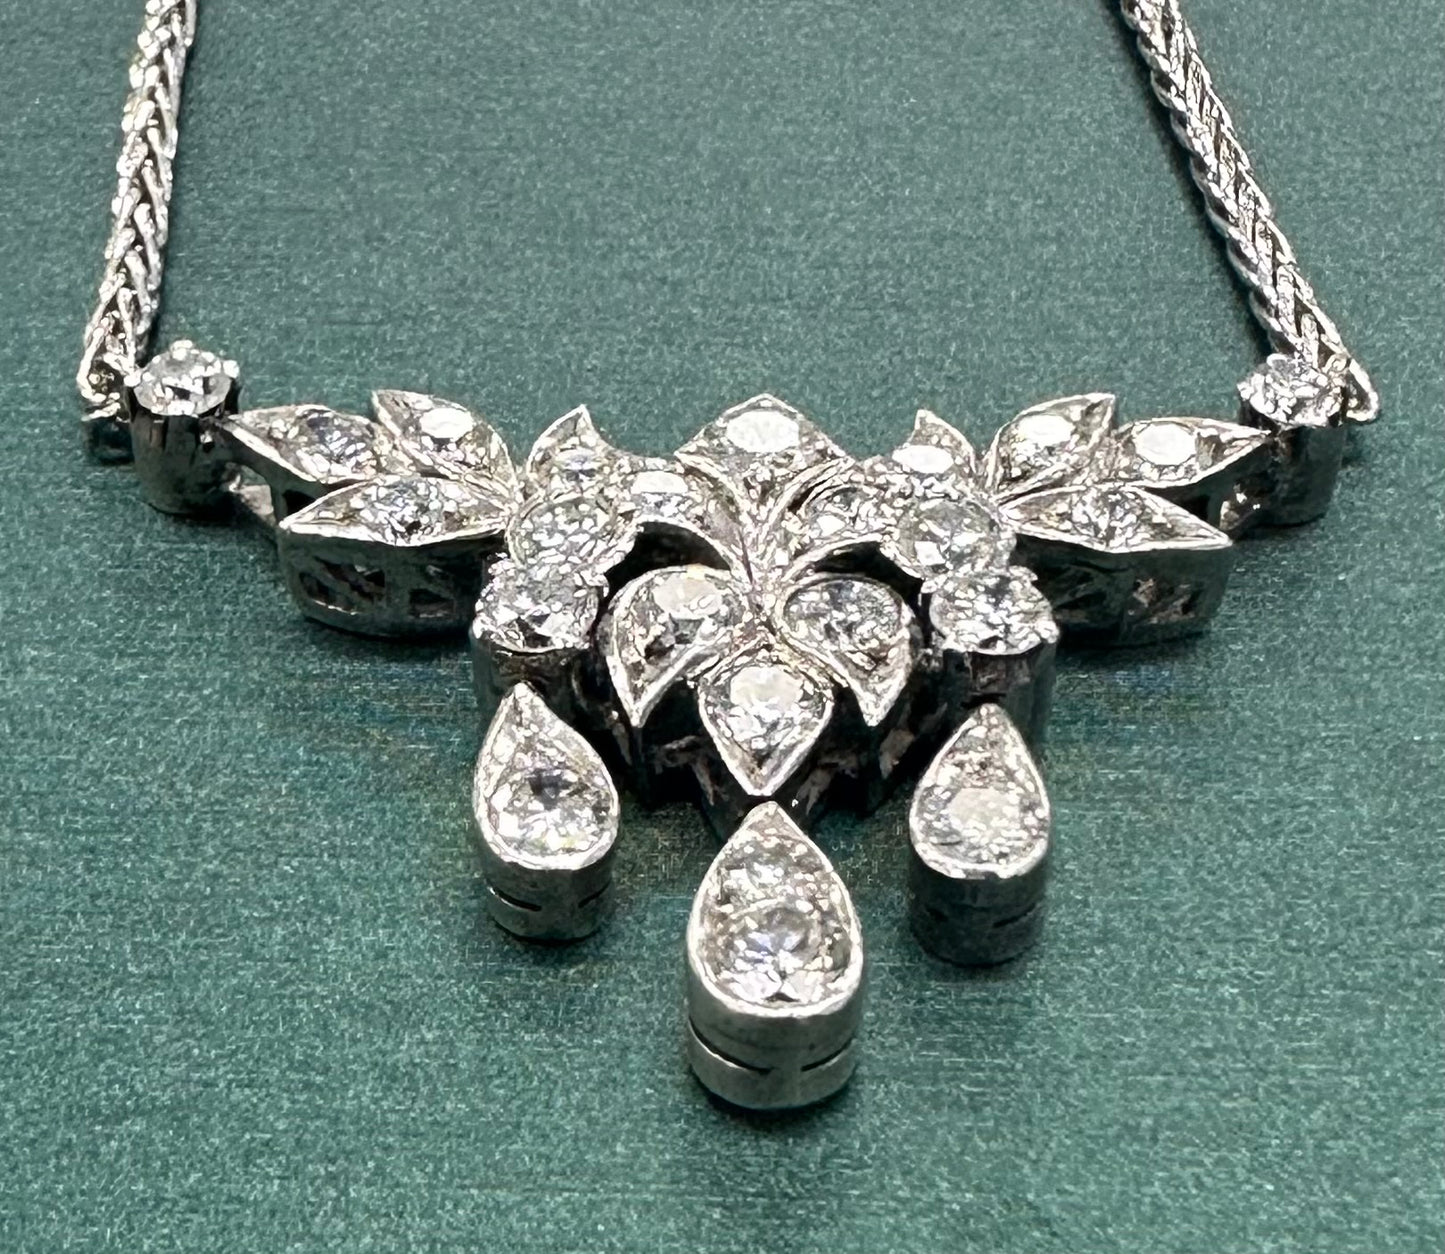 Diamond tear dangle necklace